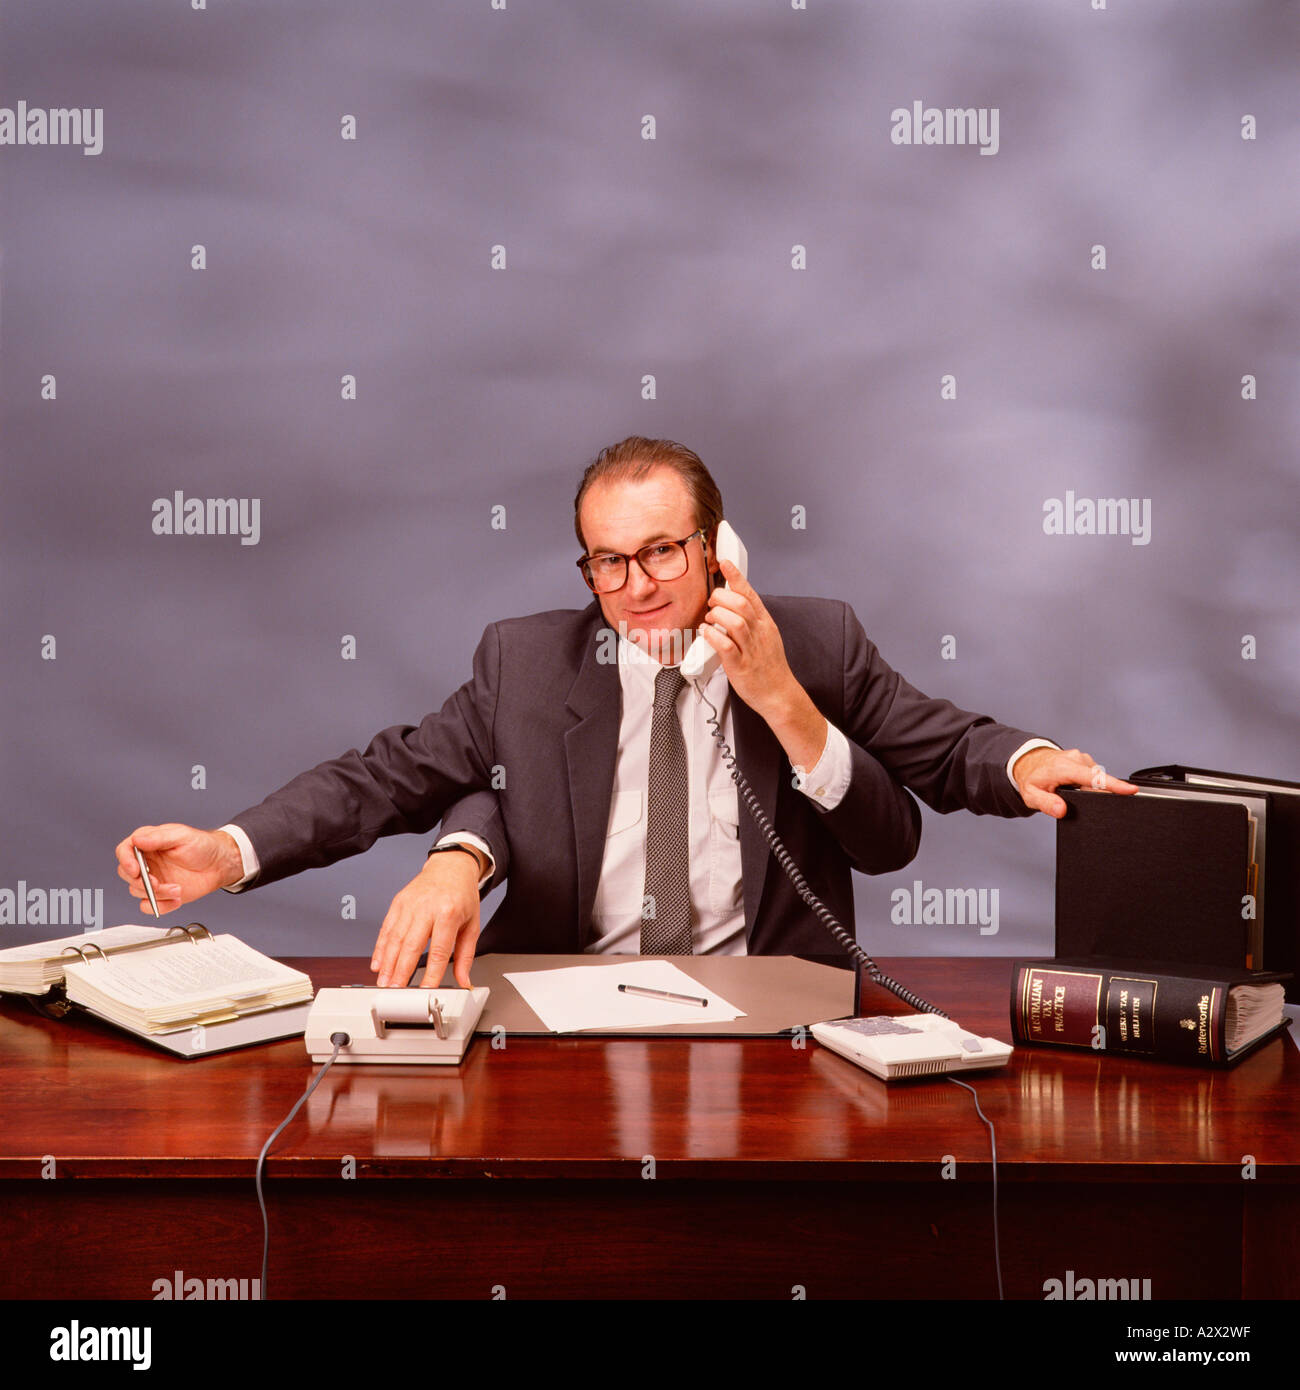 Concetto Altered digitalmente immagine di un imprenditore con quattro bracci a lavorare alla sua scrivania. Foto Stock